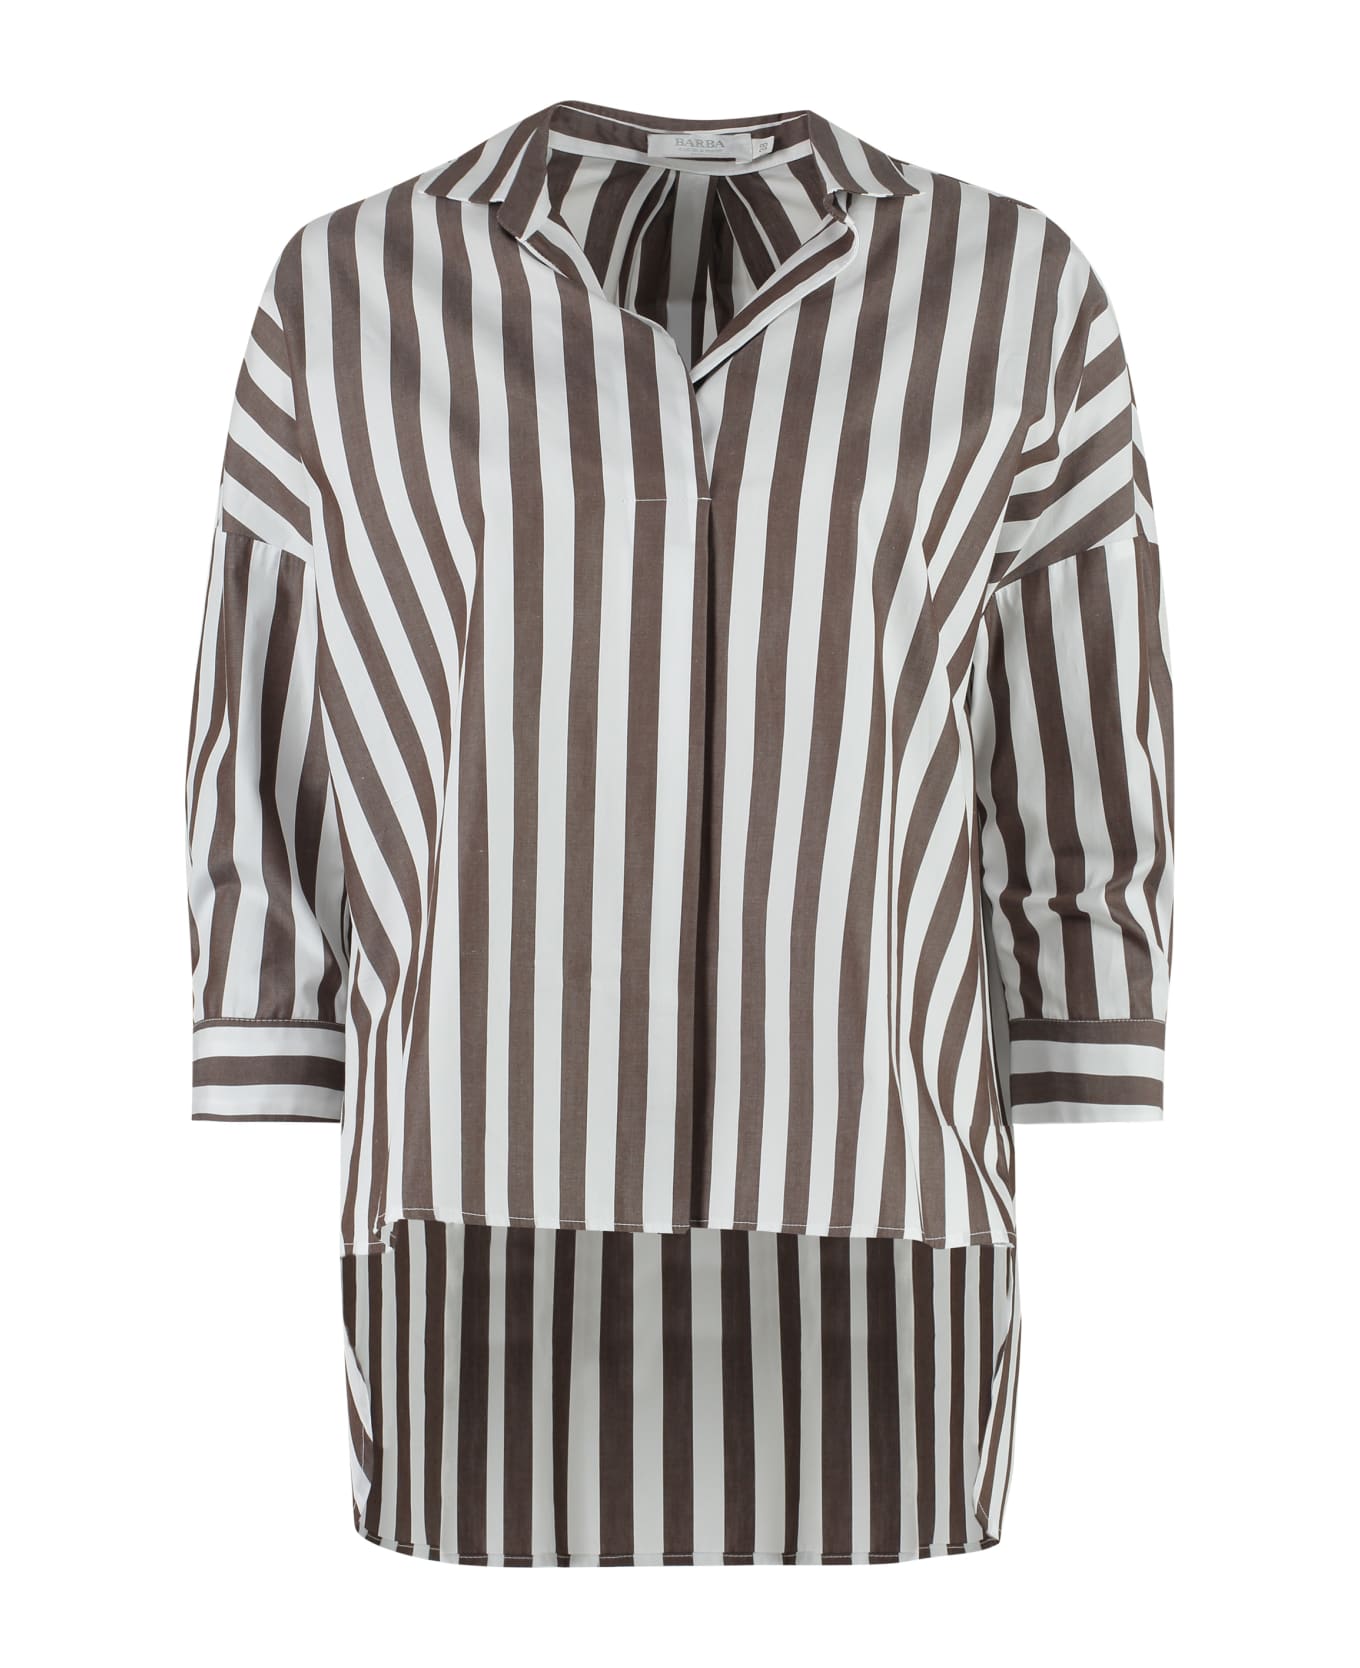 Barba Napoli Striped Cotton Shirt - Multicolor